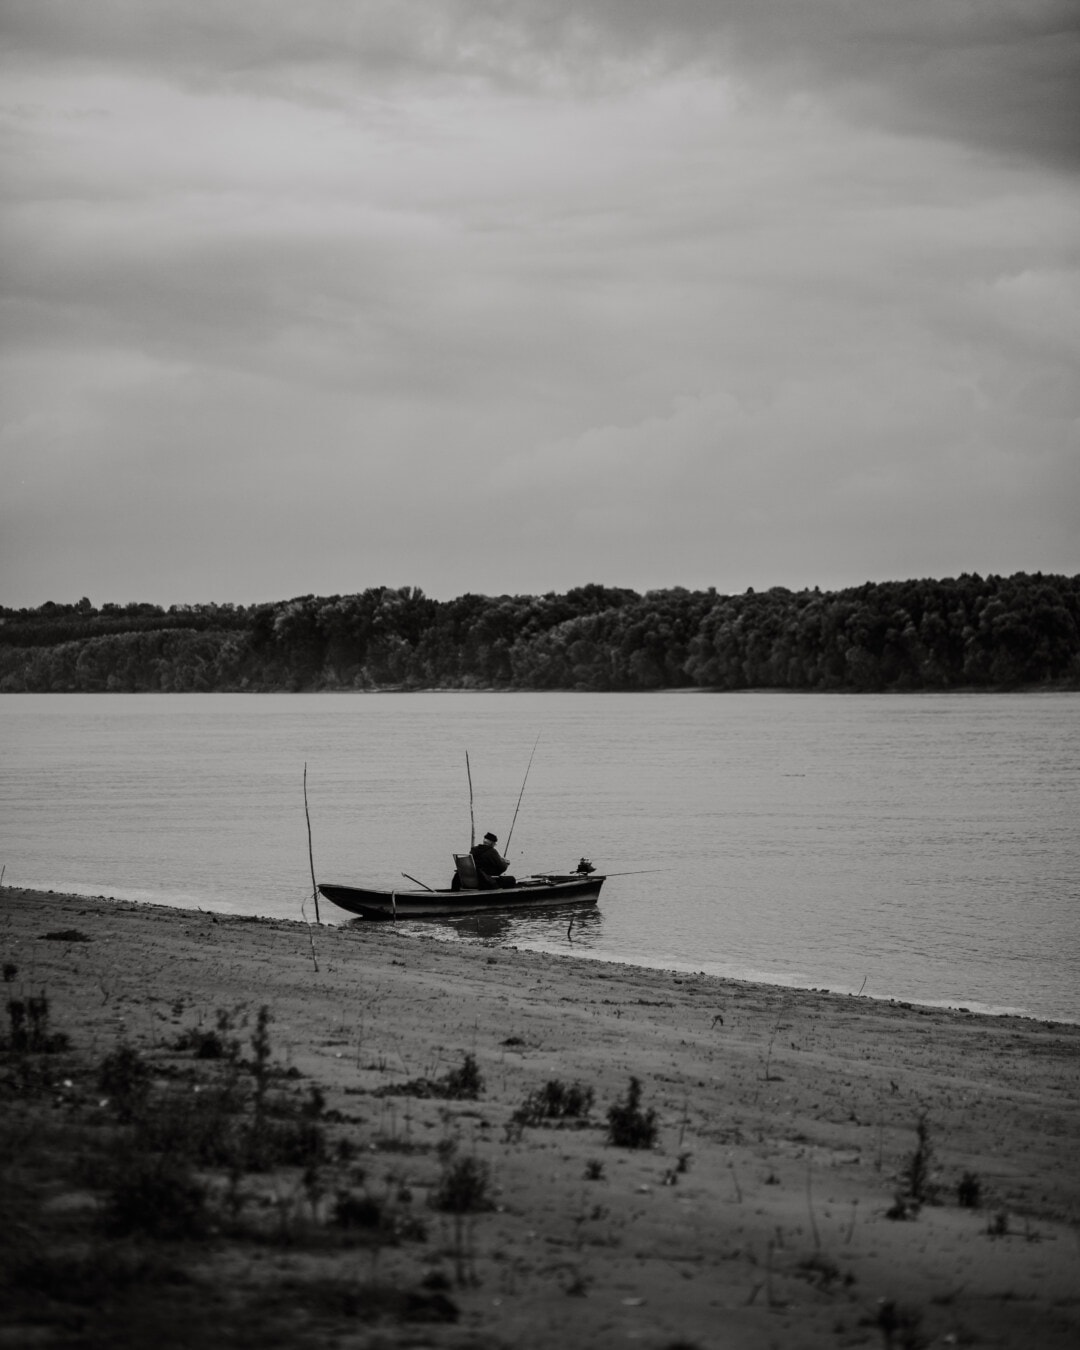 břehu řeky, říční loď, rybář, řeka, černá a bílá, černobílý tisk, černá, pobřeží, loď, voda